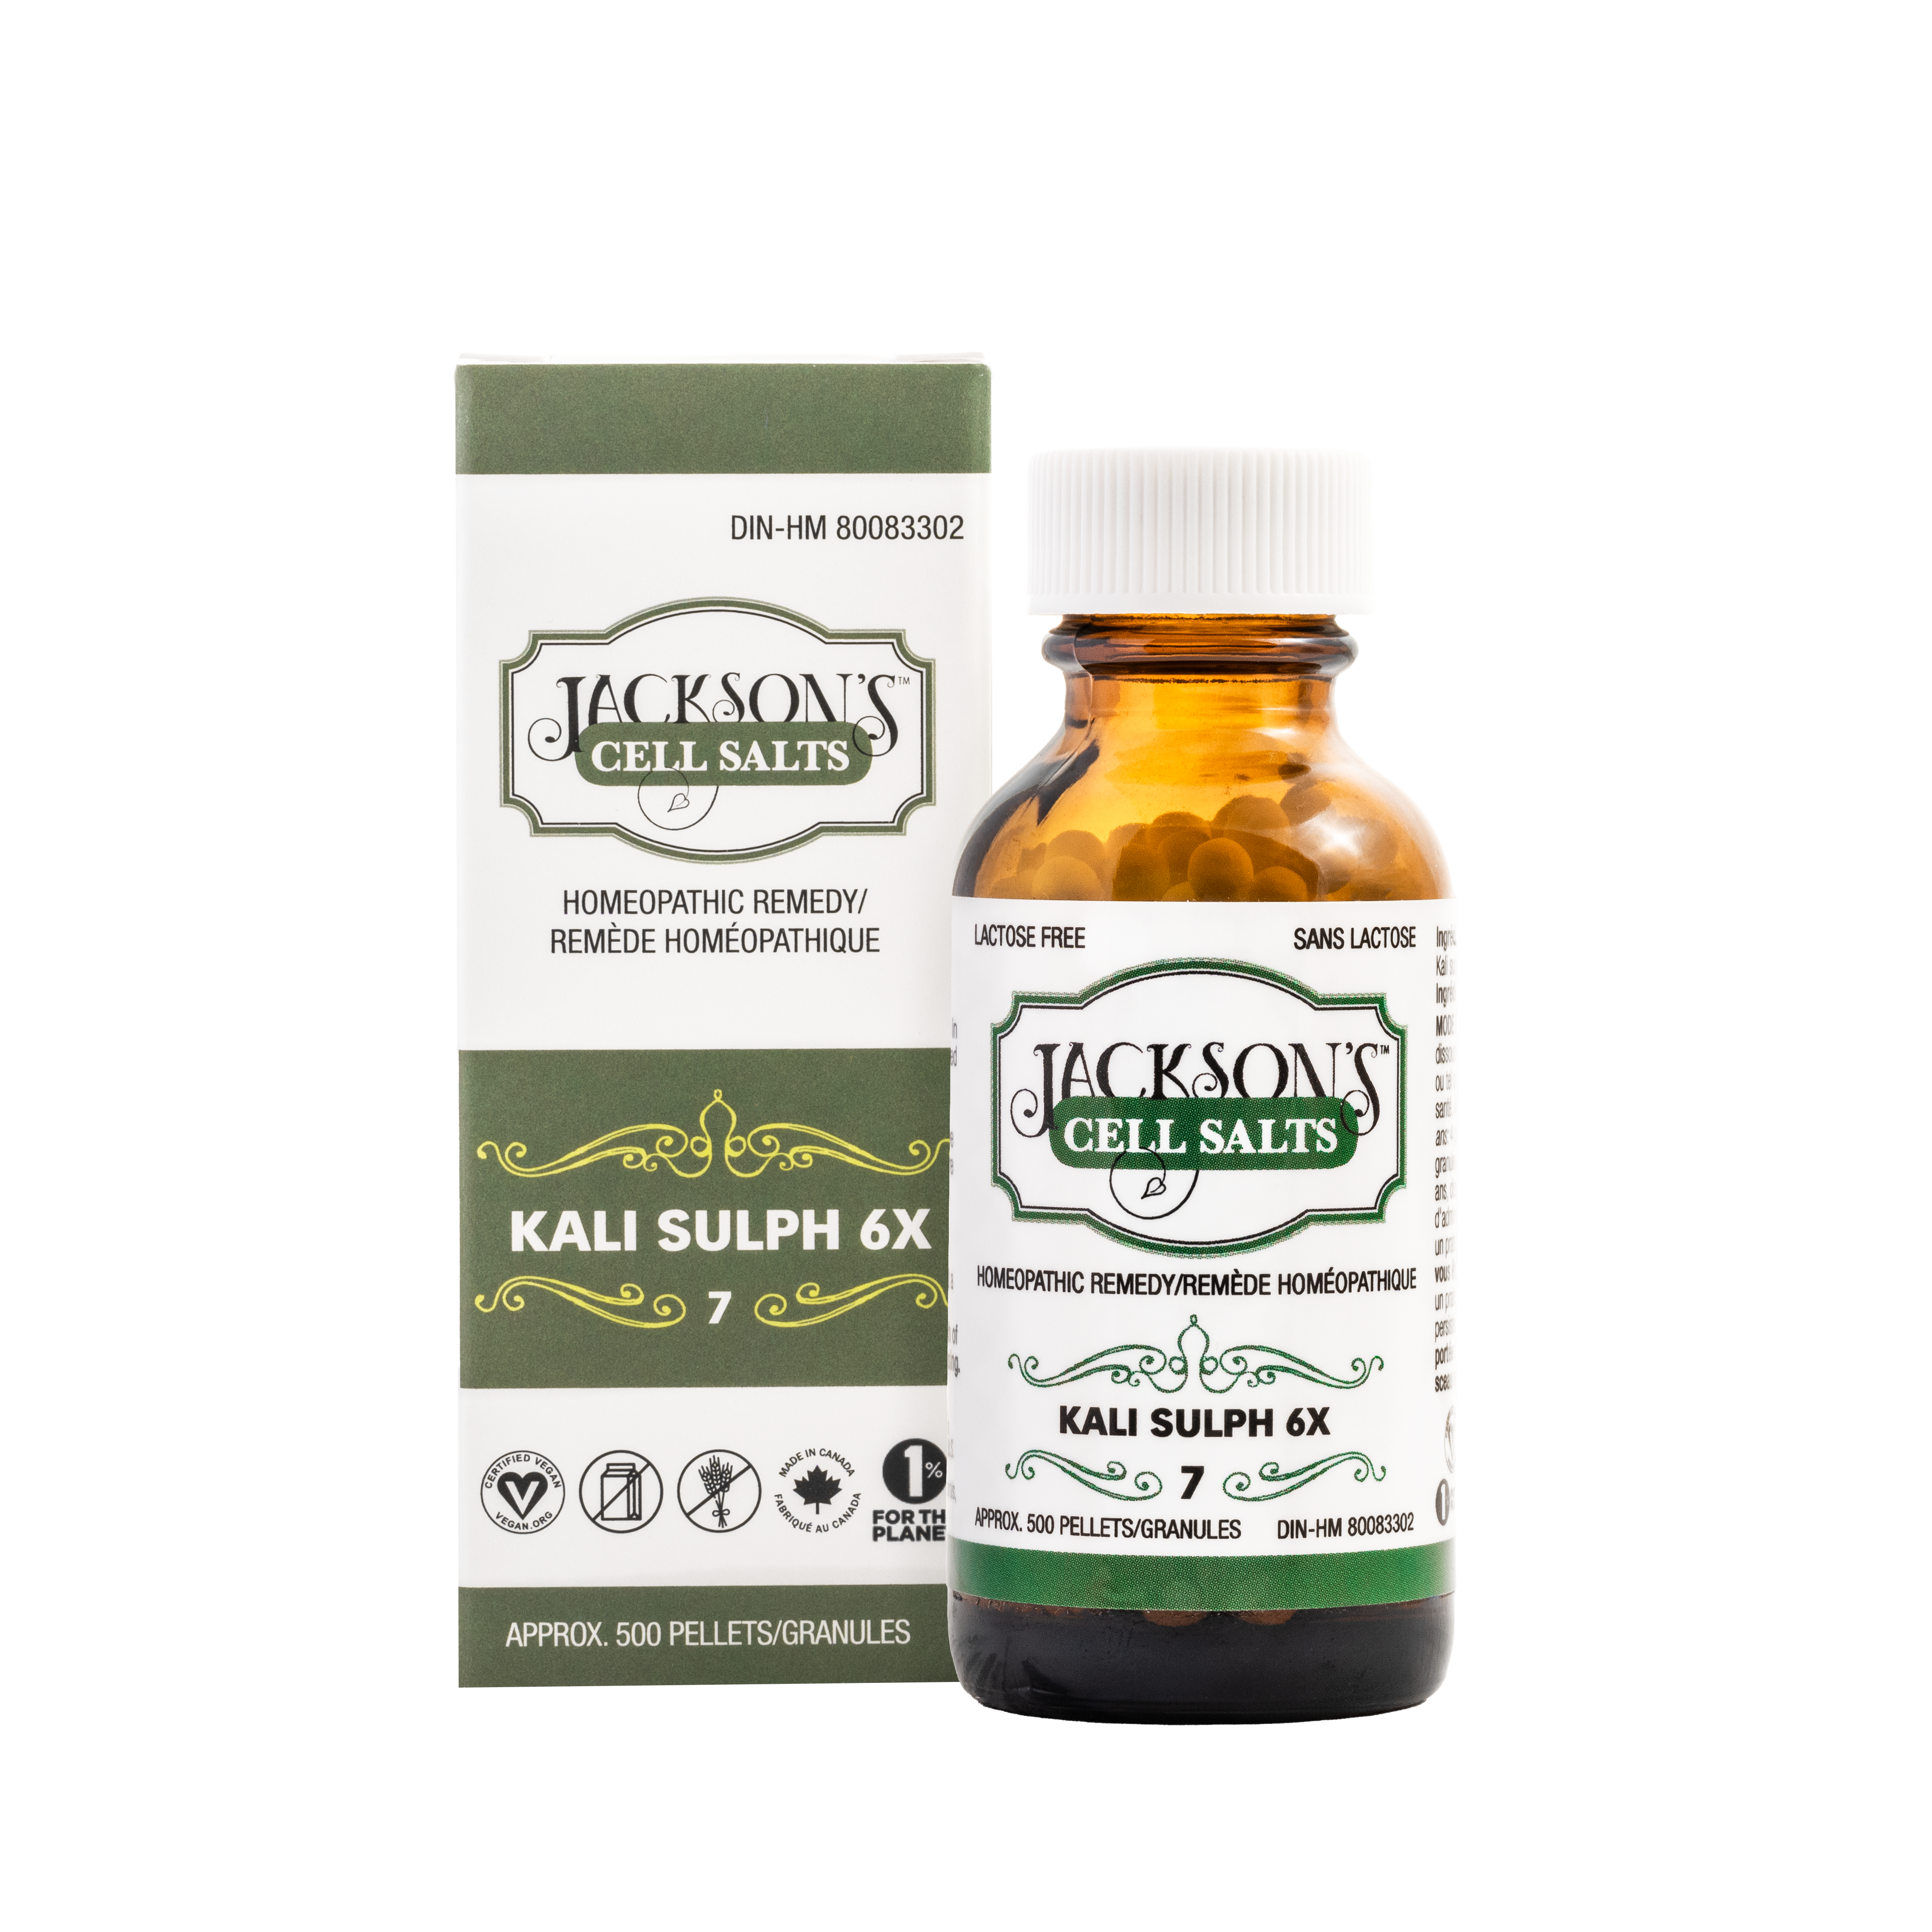 #7 Kali sulph 6X (sulfate de potassium) - Sel de cellules de Schuessler (tissus) certifié végétalien et sans lactose